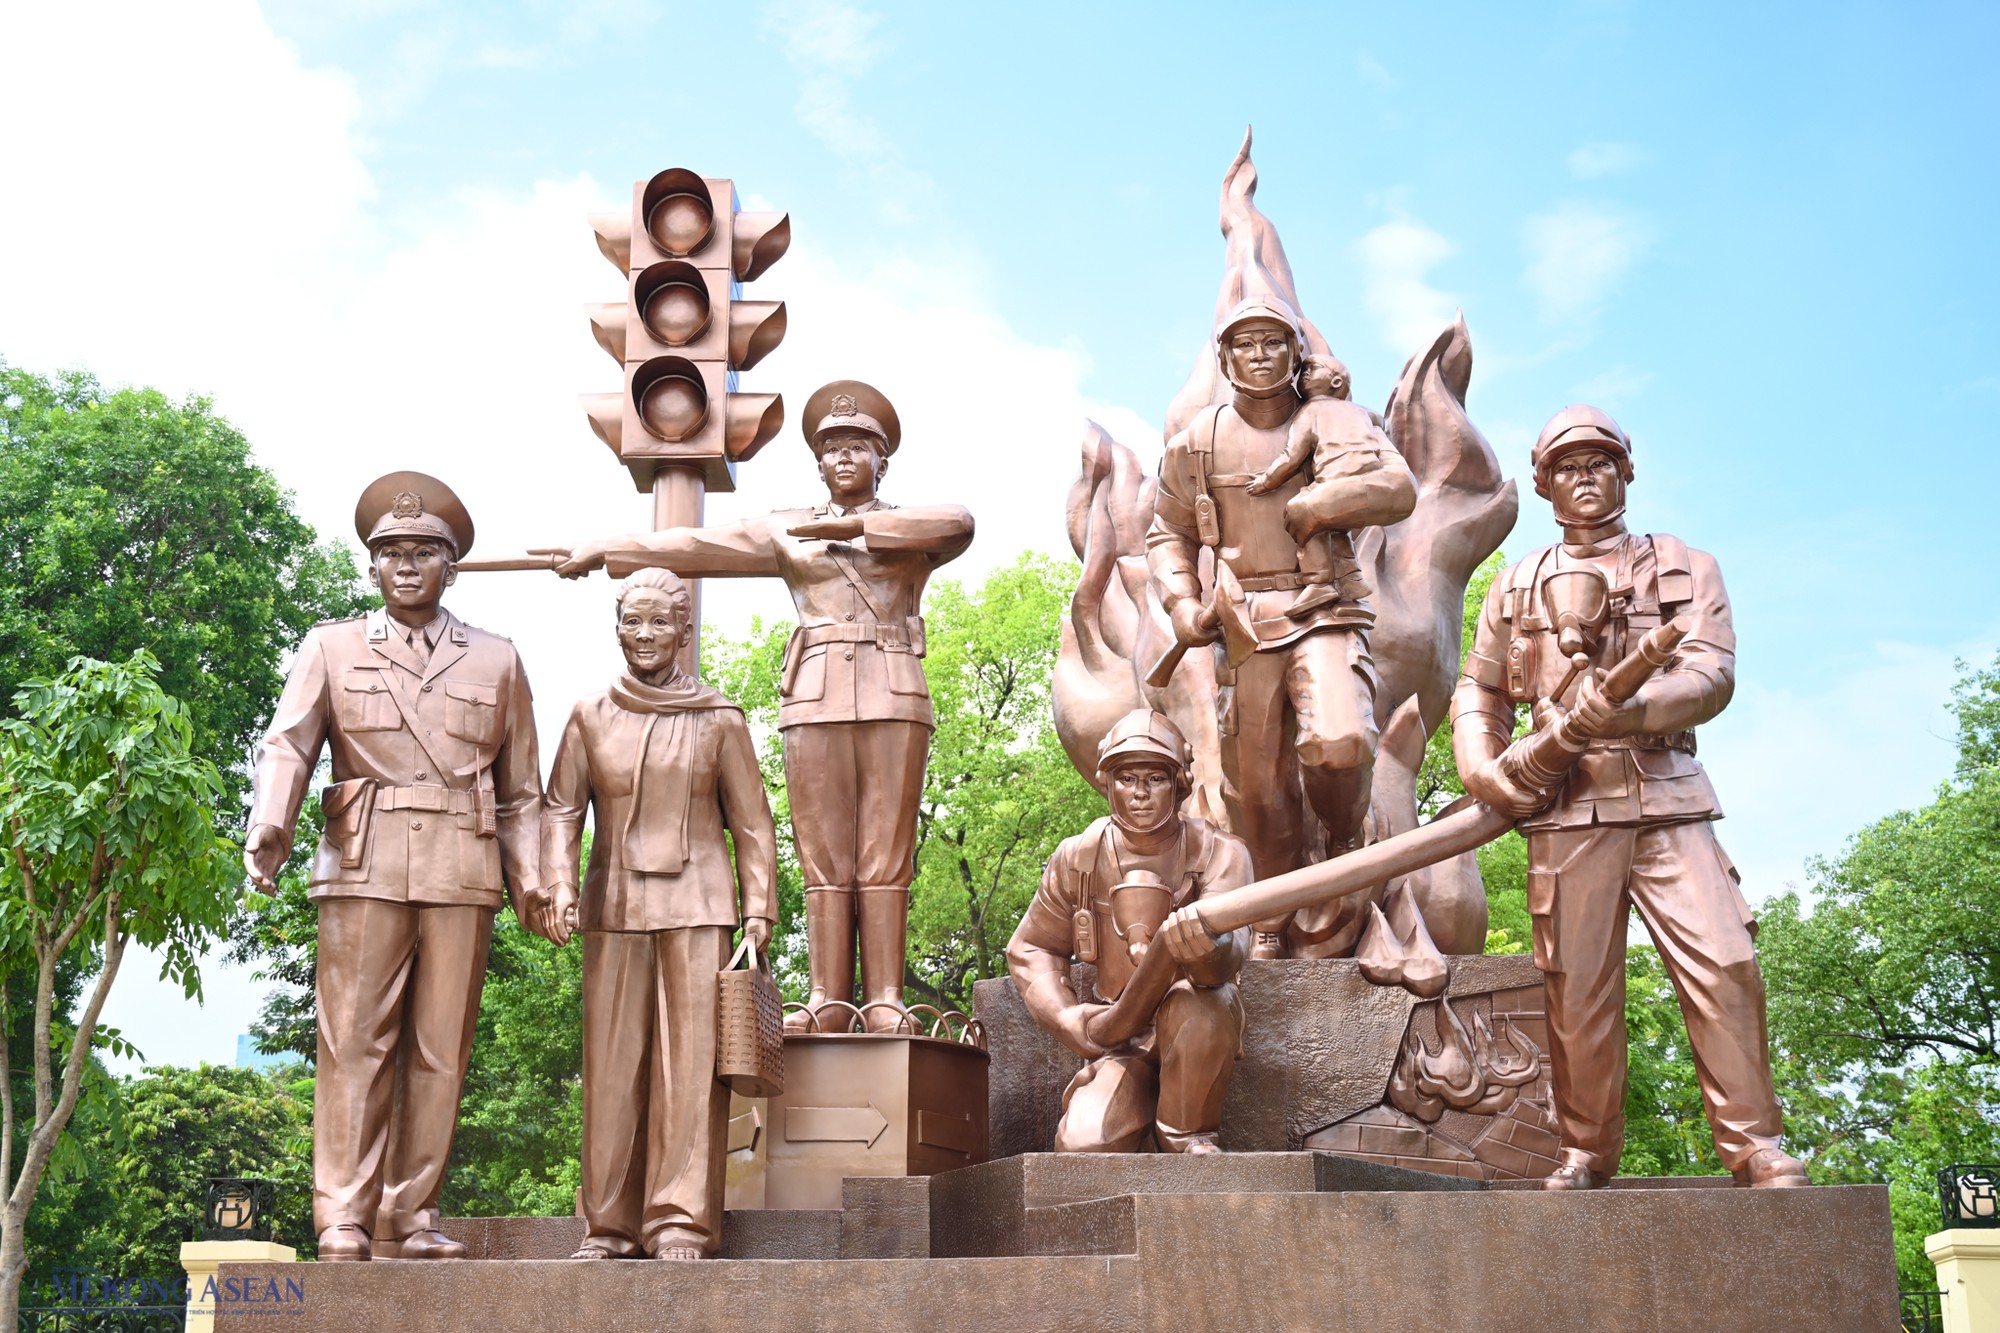 Công trình tượng đài mới nhất của Hà Nội là cụm tượng đài Công an vì nhân dân phục vụ, lấy hình tượng cảnh sát giao thông và phòng cháy chữa cháy. Tượng đài khánh thành ngày 17/7/2022, chào mừng kỷ niệm 60 năm ngày truyền thống lực lượng cảnh sát nhân dân (20/7/1962-20/7/2022).